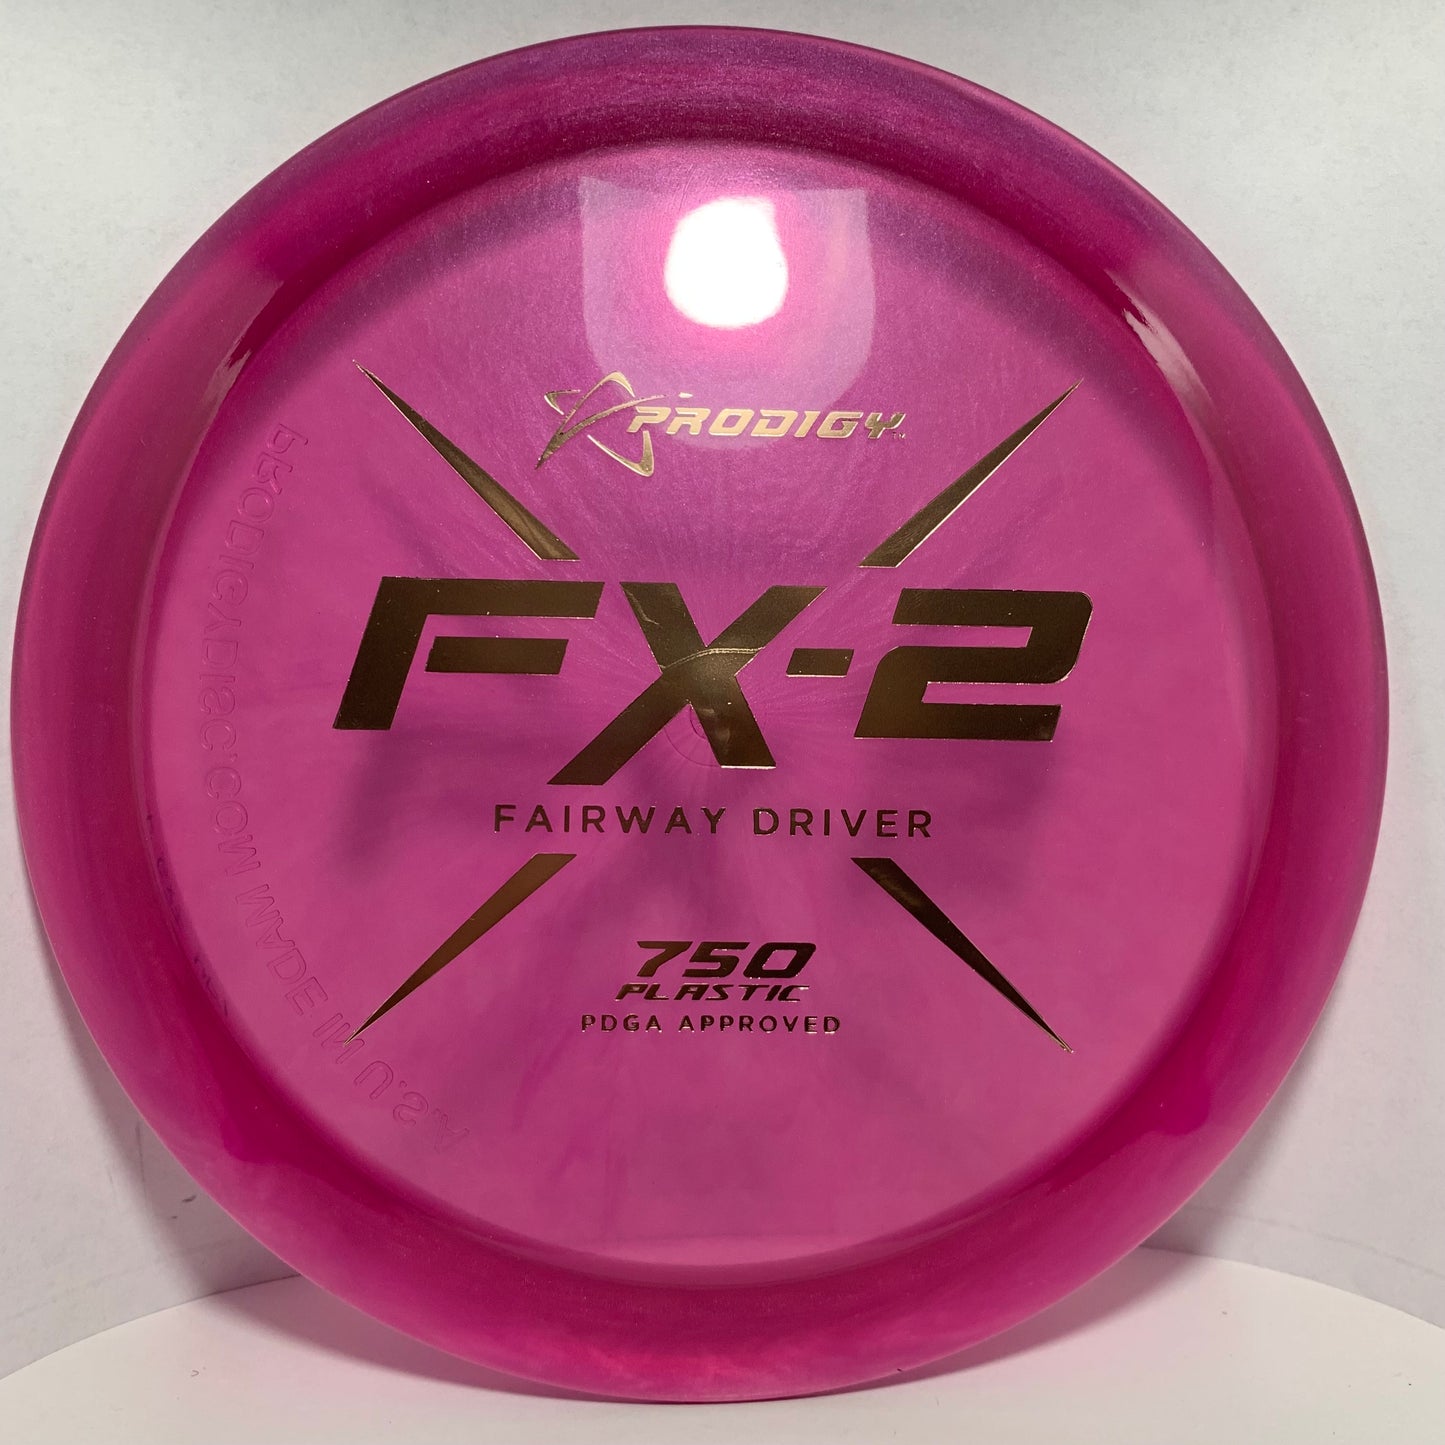 FX-2 - 750